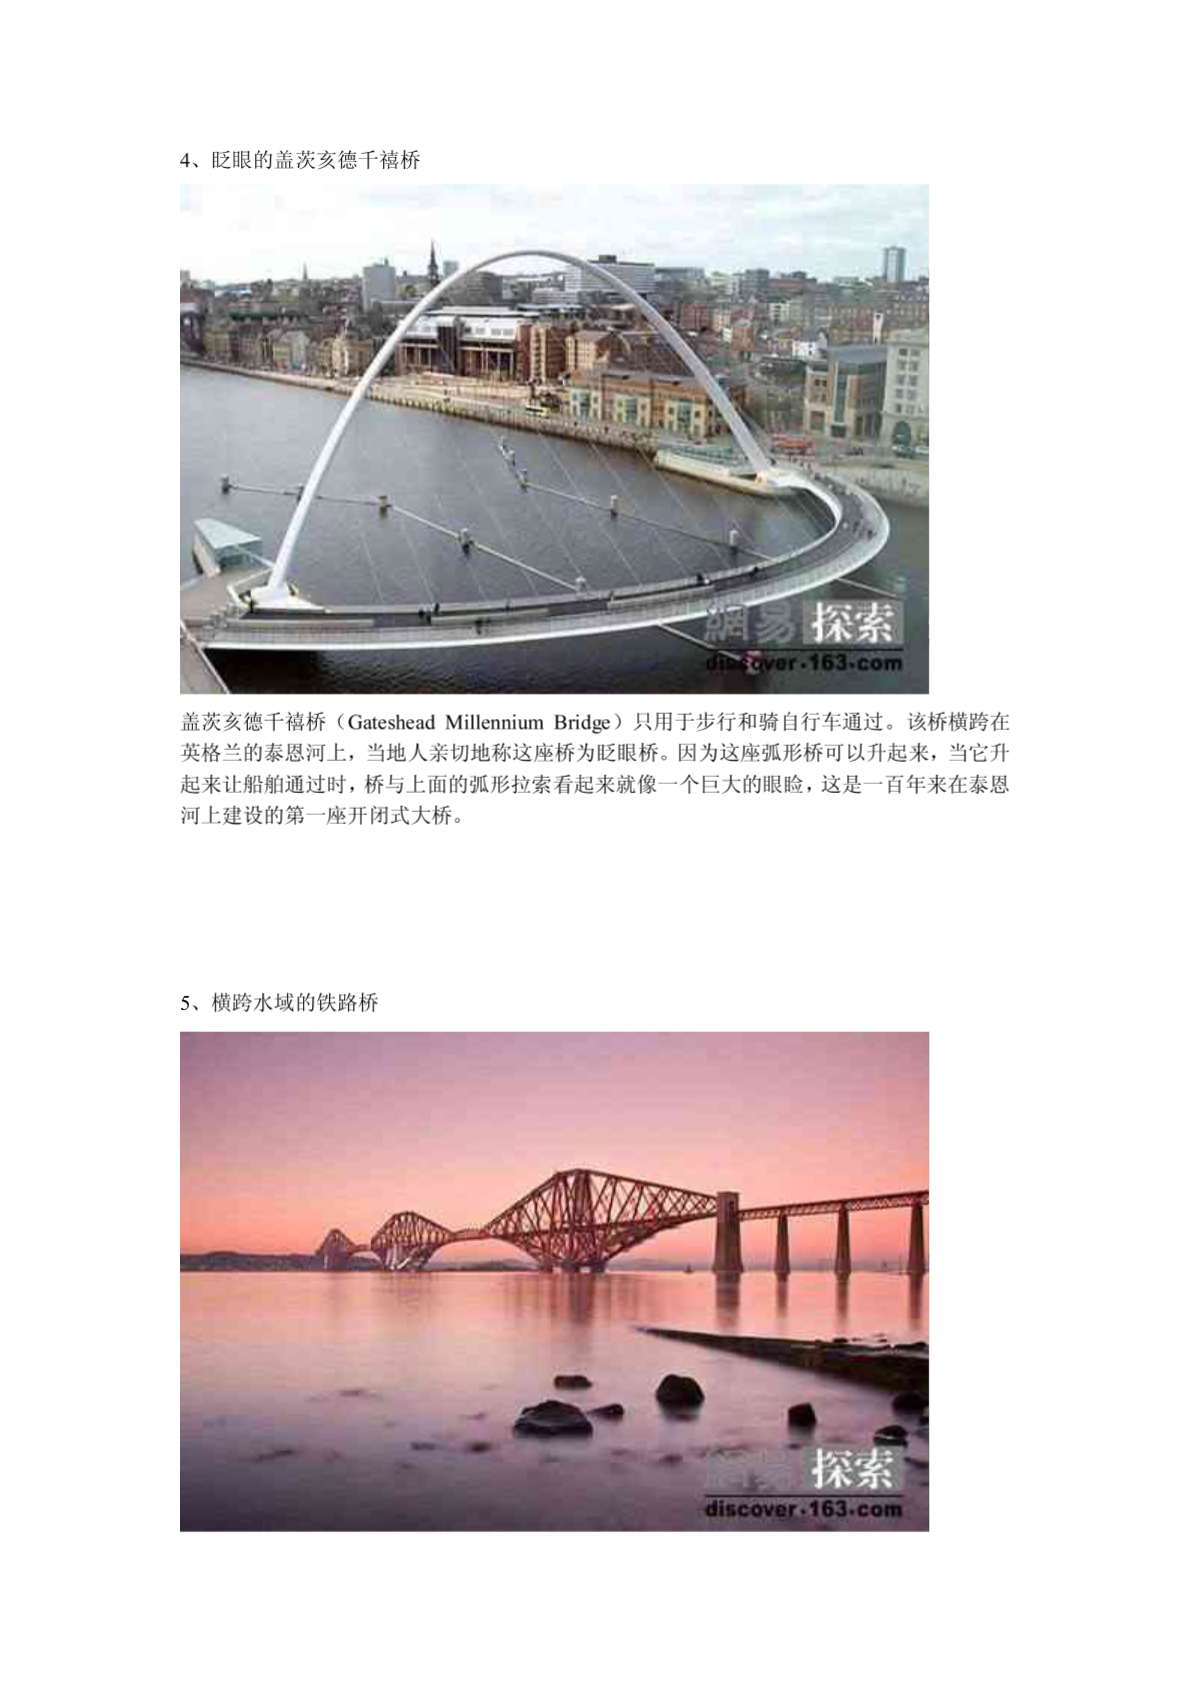 不可思议的桥梁设计 世界上最奇特的20座桥多图-图二